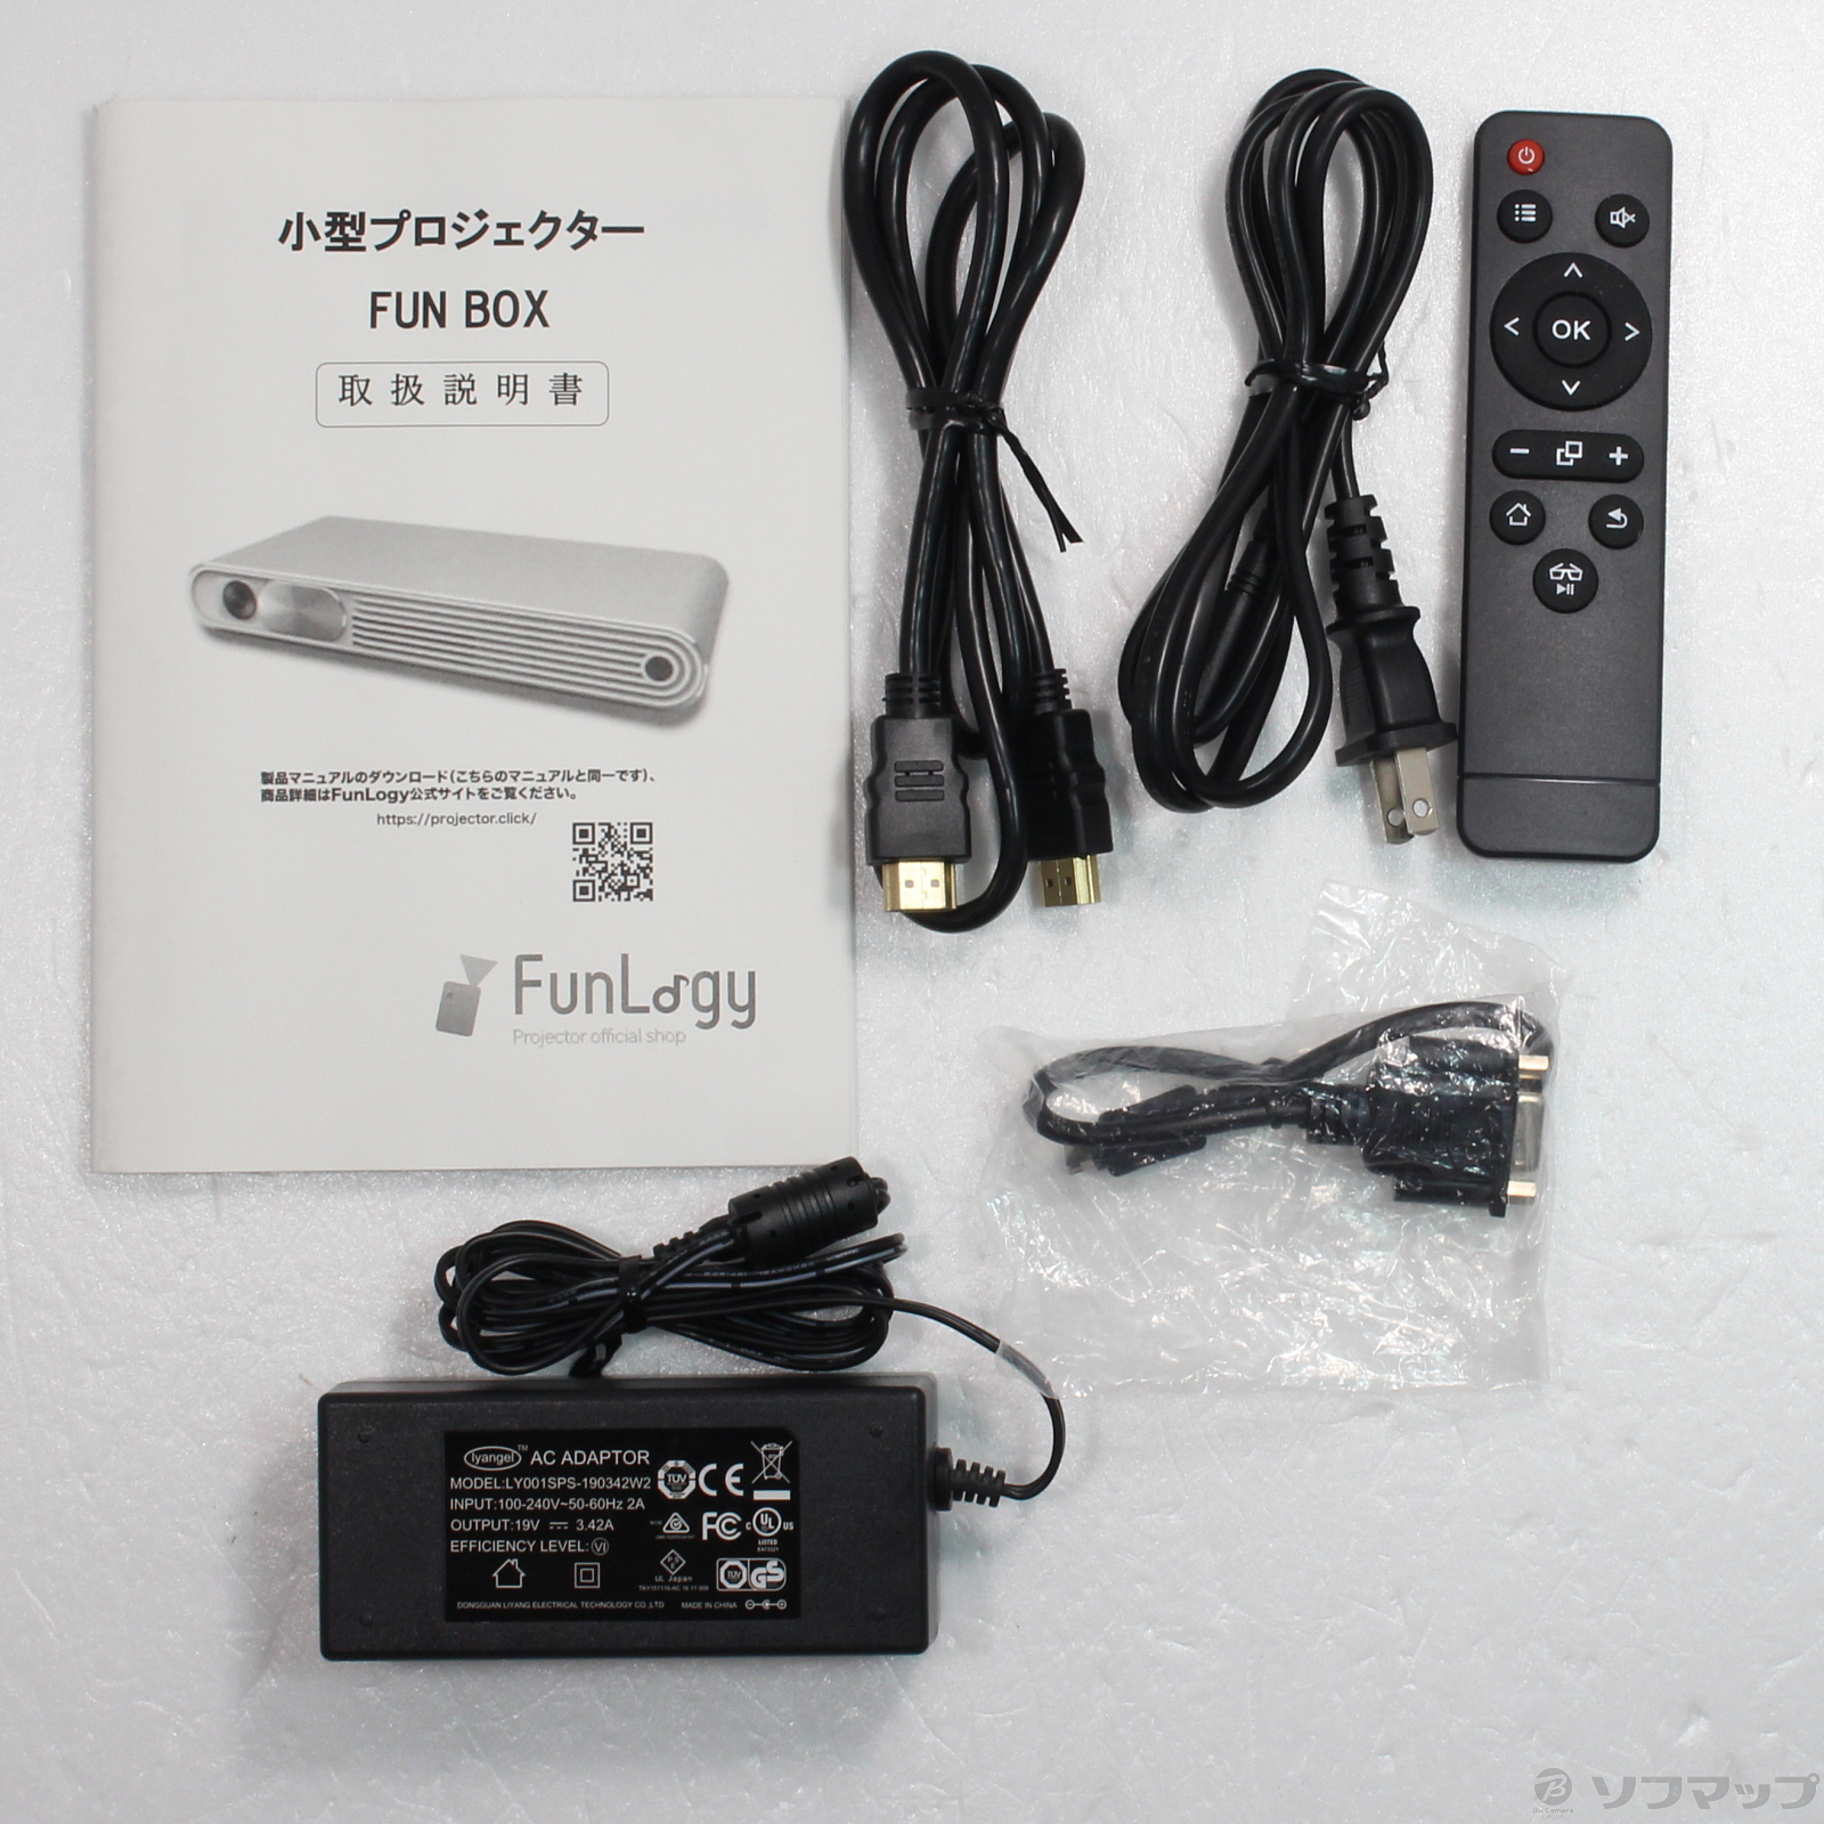 小型プロジェクター FunLogy FUN BOX 2 (3000ルーメン) - テレビ、映像機器